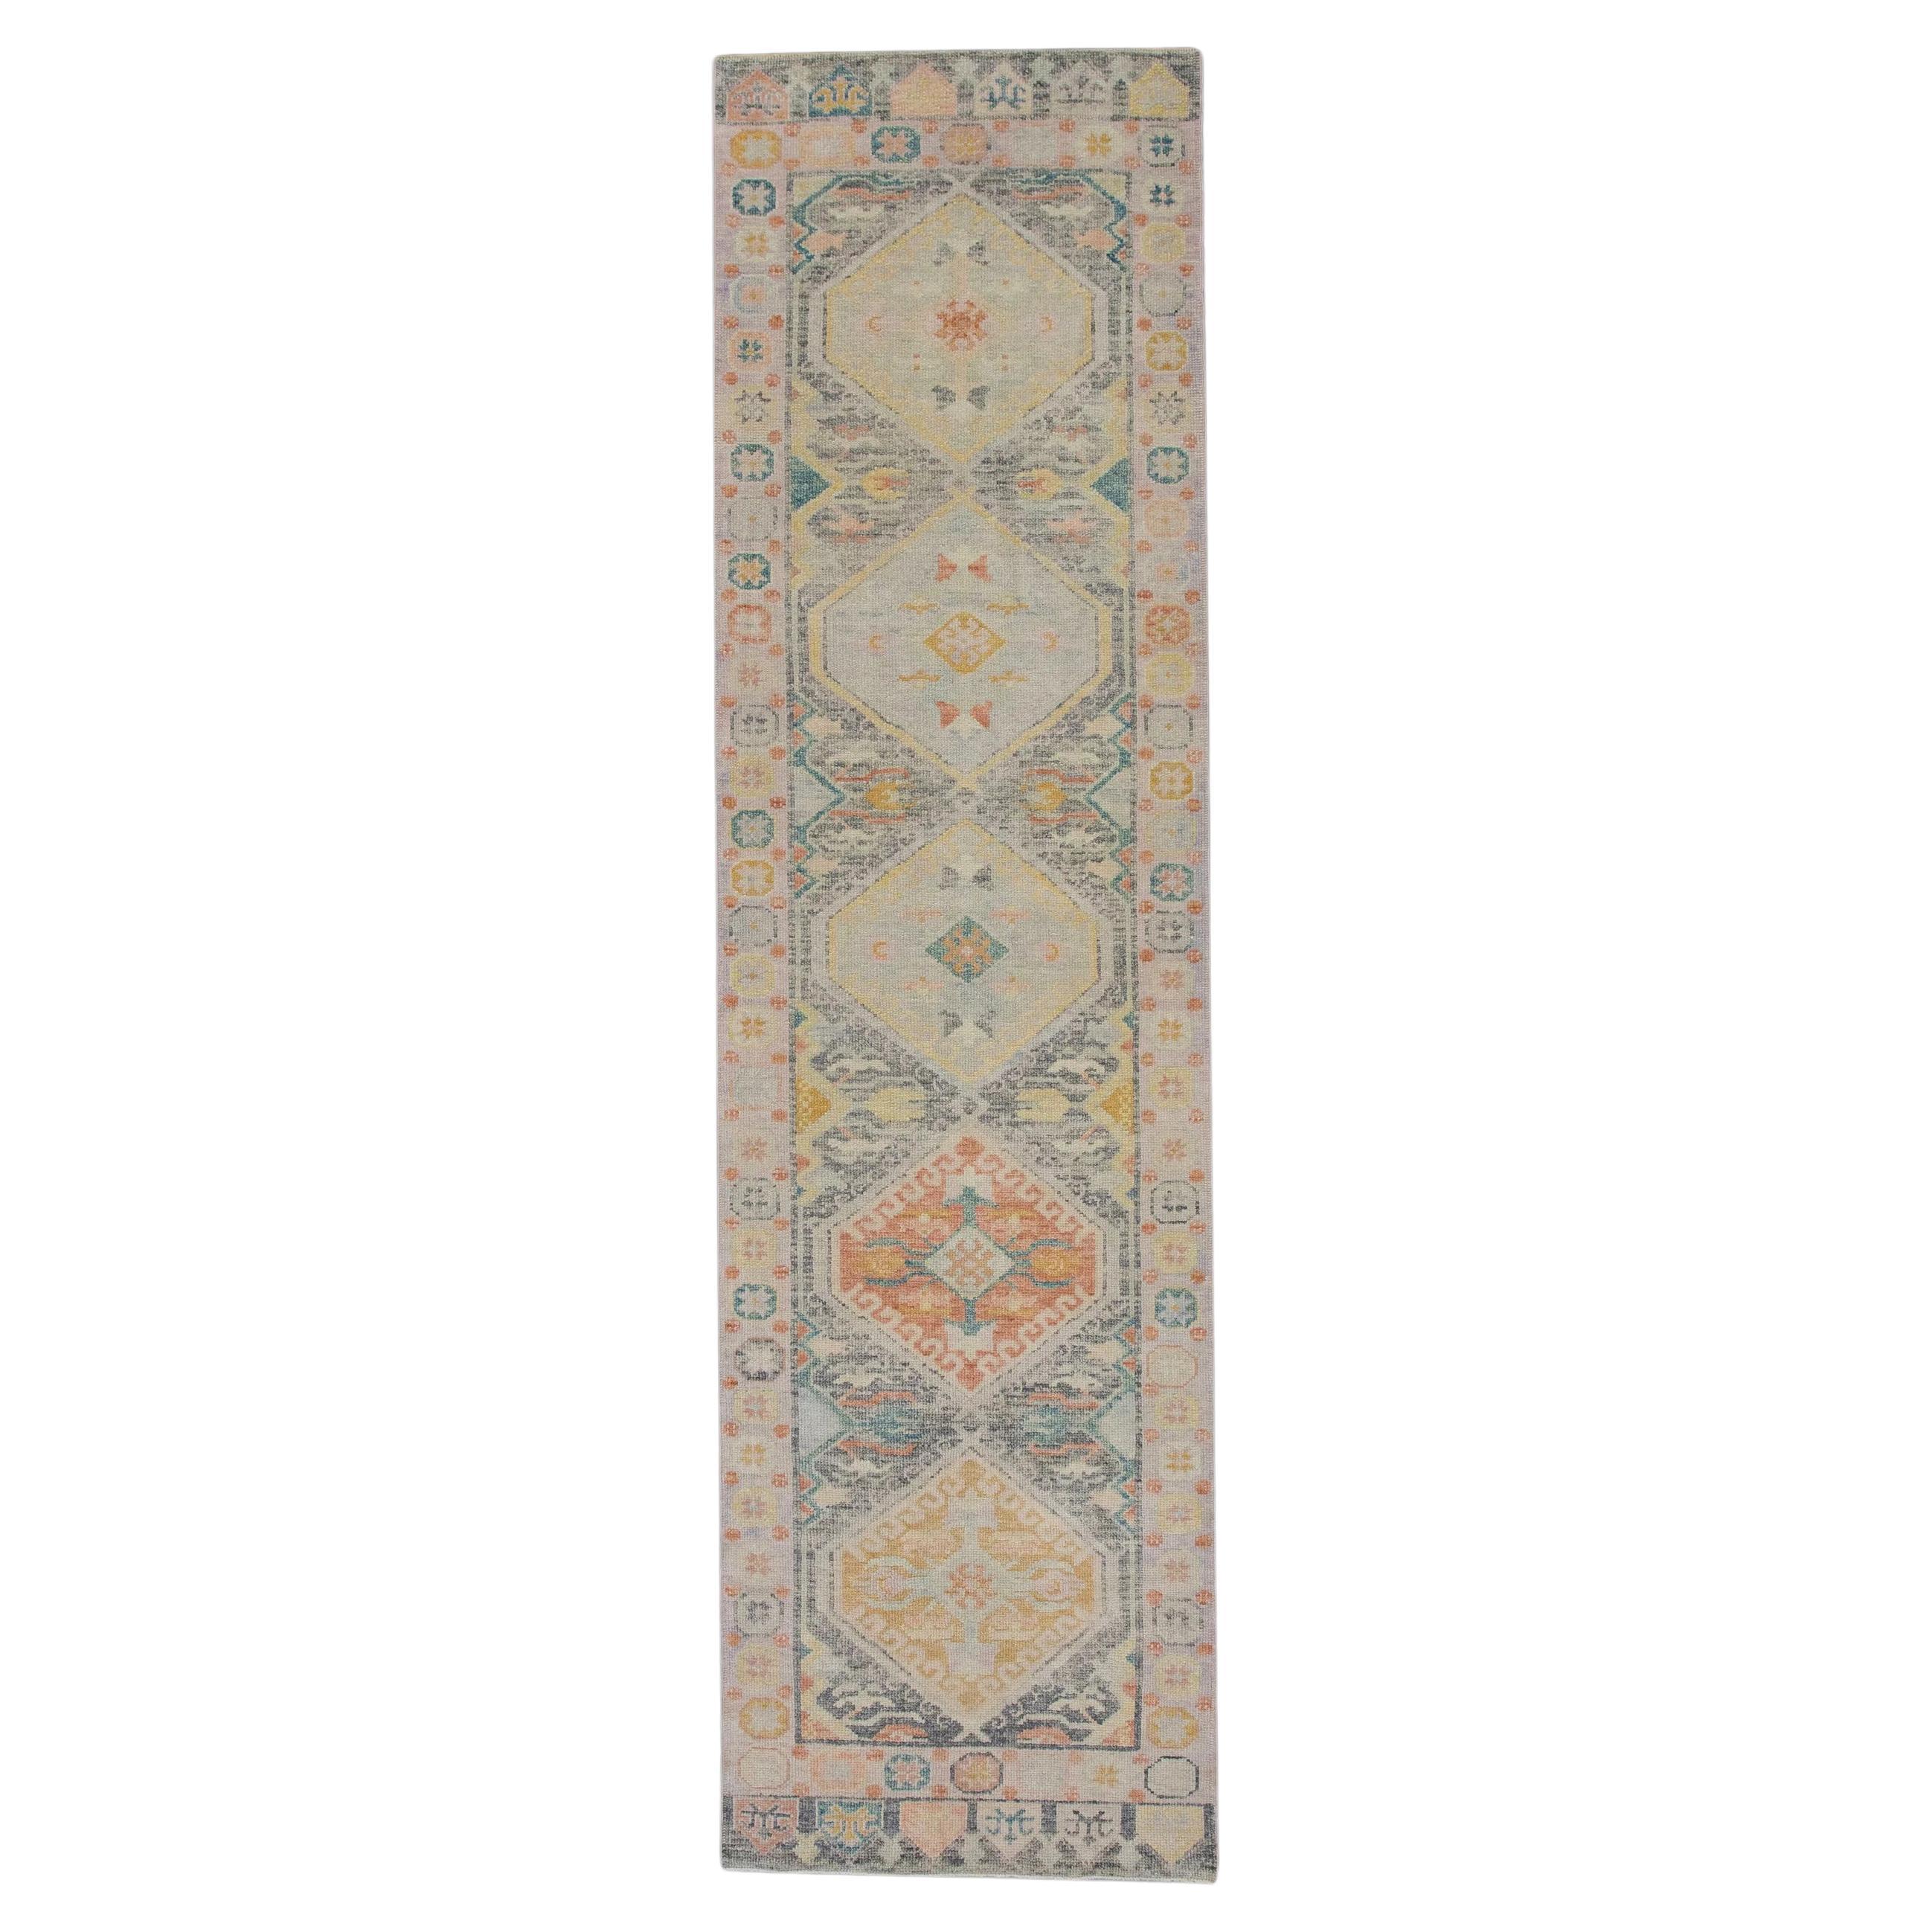 Orientalischer handgeknüpfter türkischer Oushak-Teppich 3'1" x 11'5" #5935